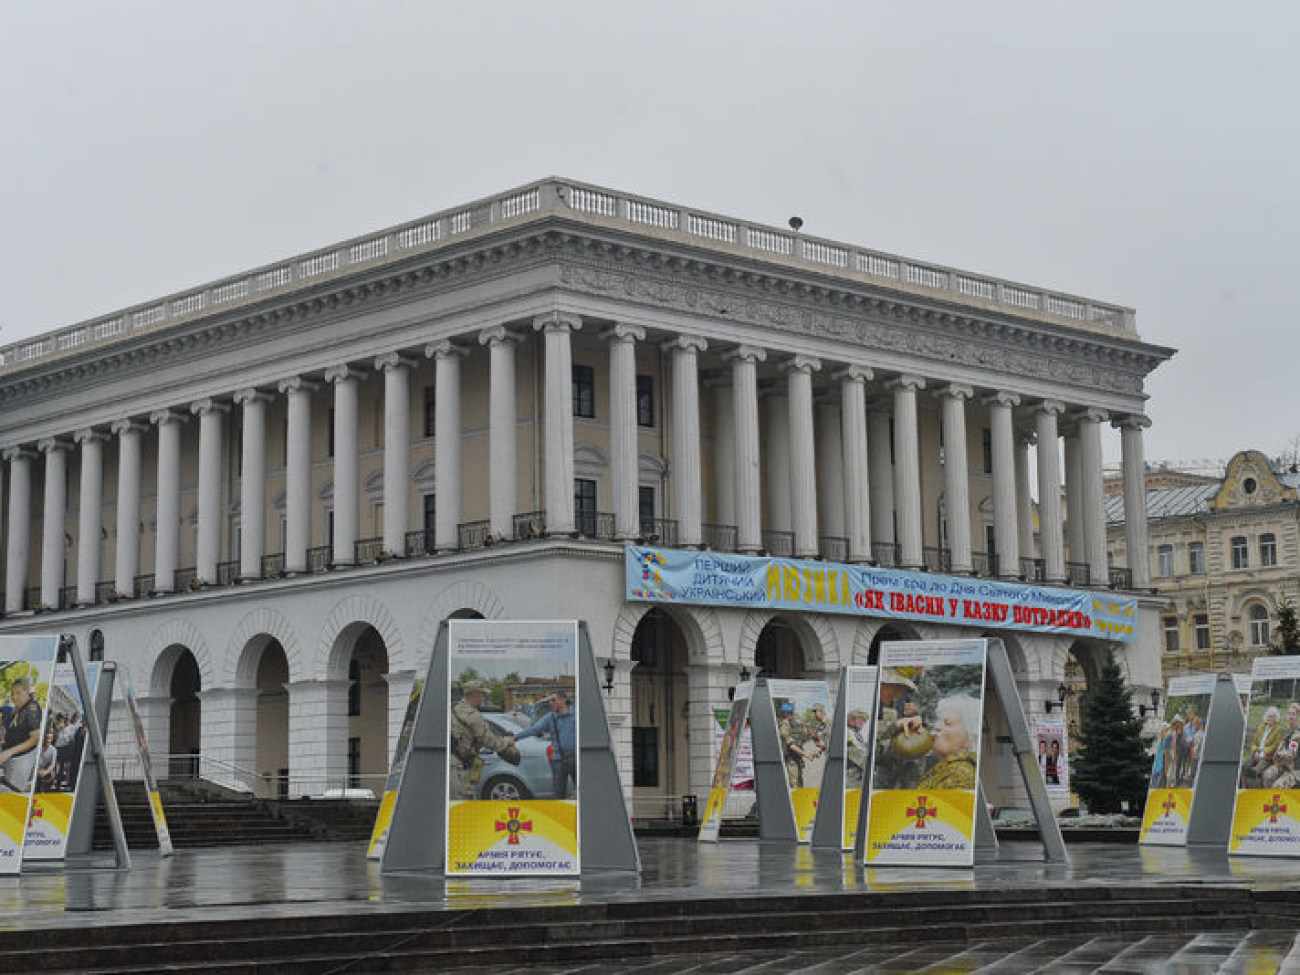 День до годовщины: на Майдане праздника пока не видно